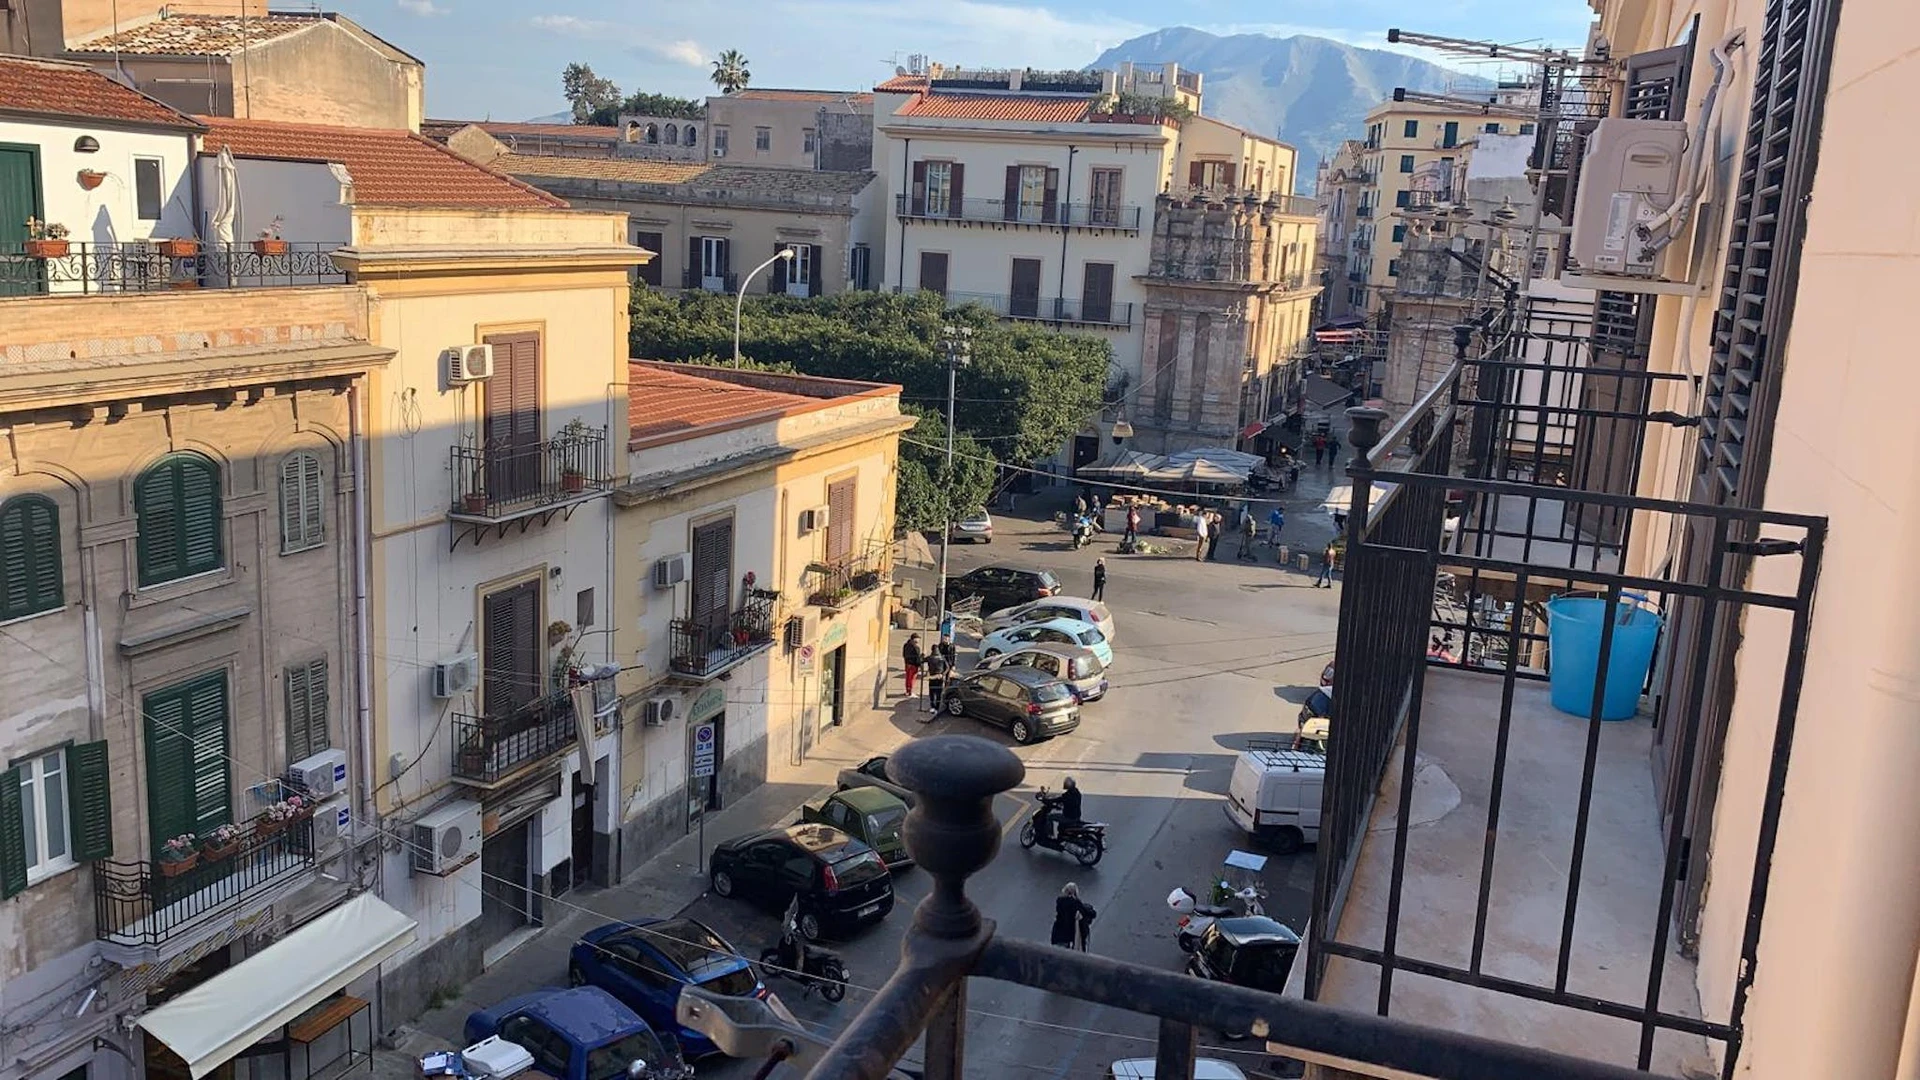 Moderne und helle Wohnung in Palermo